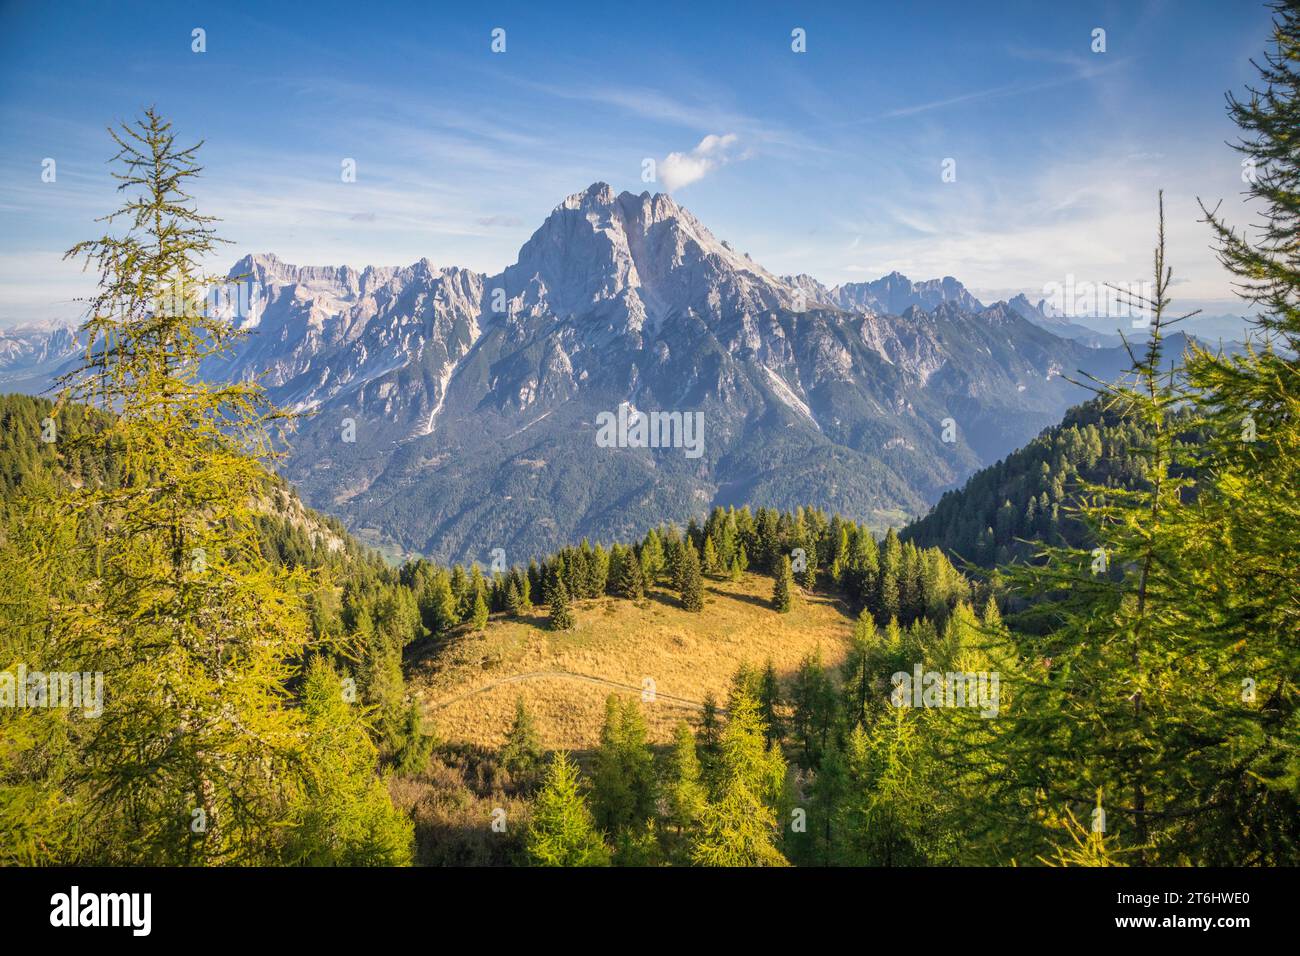 Italia, Veneto, provincia di Belluno, il monte Antelao visto dalla cima del Monte Rite, Dolomiti Foto Stock